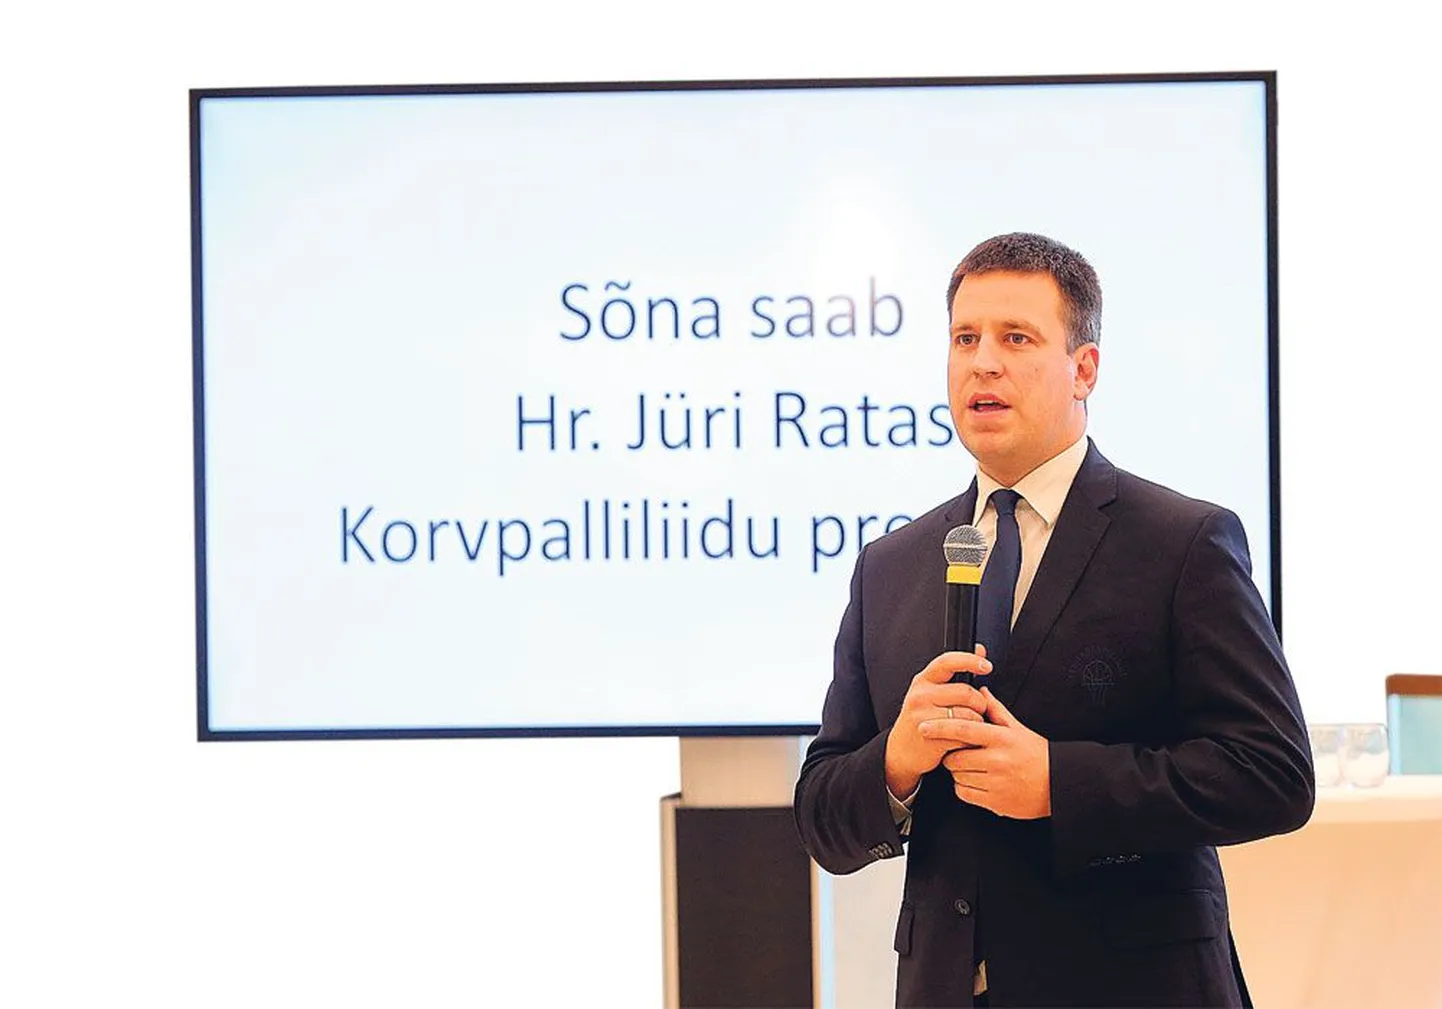 Юри Ратас, если его выберут президентом Эстонского Олимпийского комитета, готов забыть о своих политических амбициях и трудиться на благо эстонского спорта.